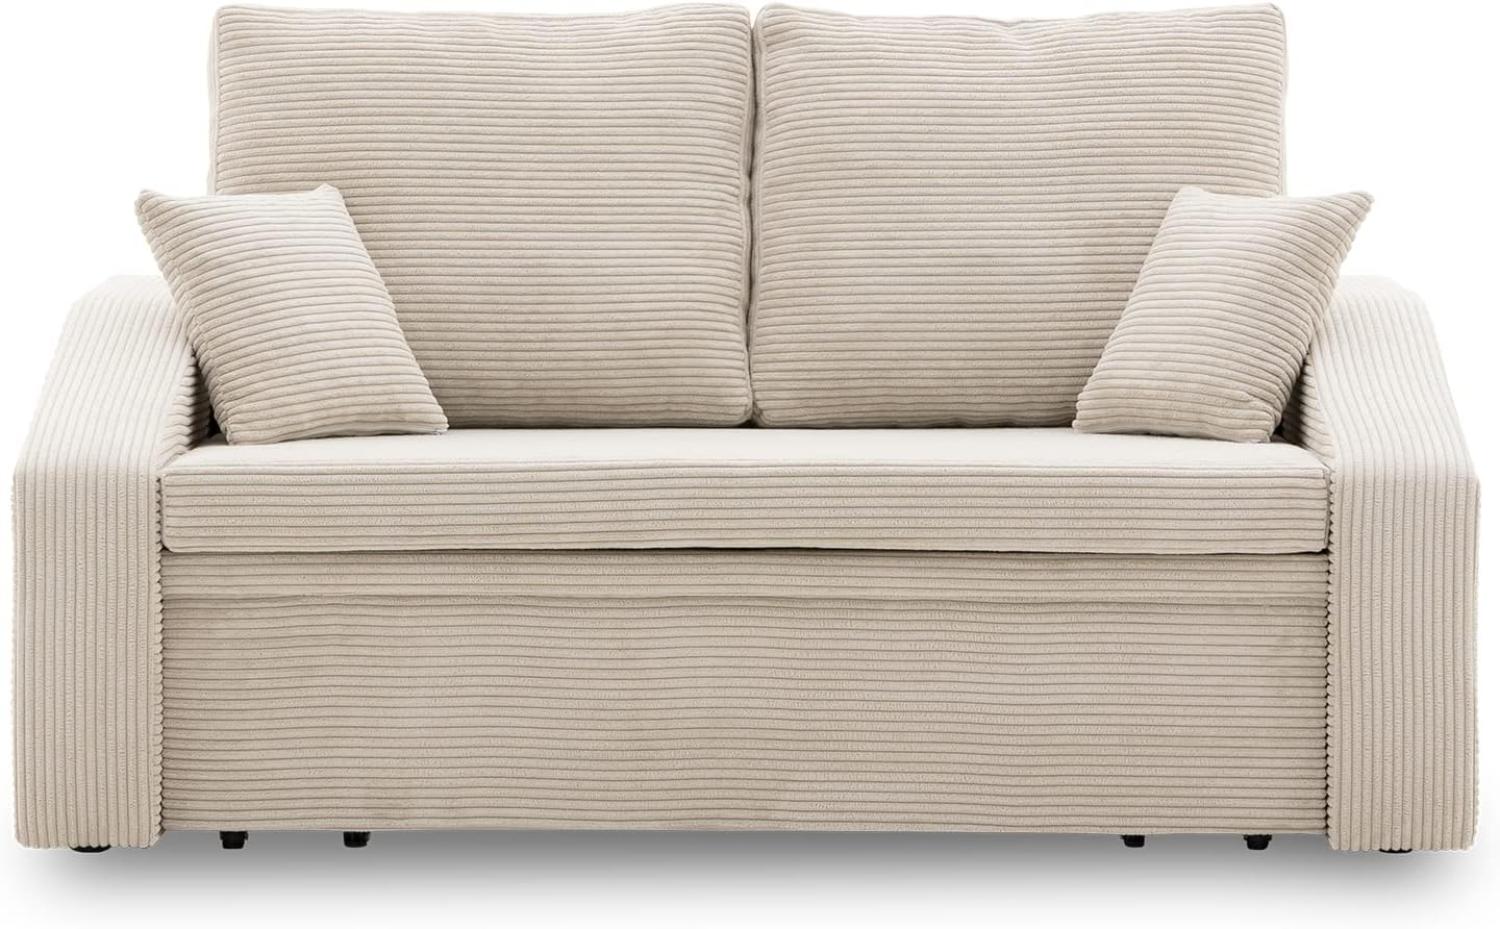 Sofa Dorma mit schlaffunktion, einfacher Aufbau, modernes Design, polstermöbel. Schlafcouch zum Wohnzimmer. Widerstandsfähiges, Minimalistisches Design (POSO 100) Bild 1